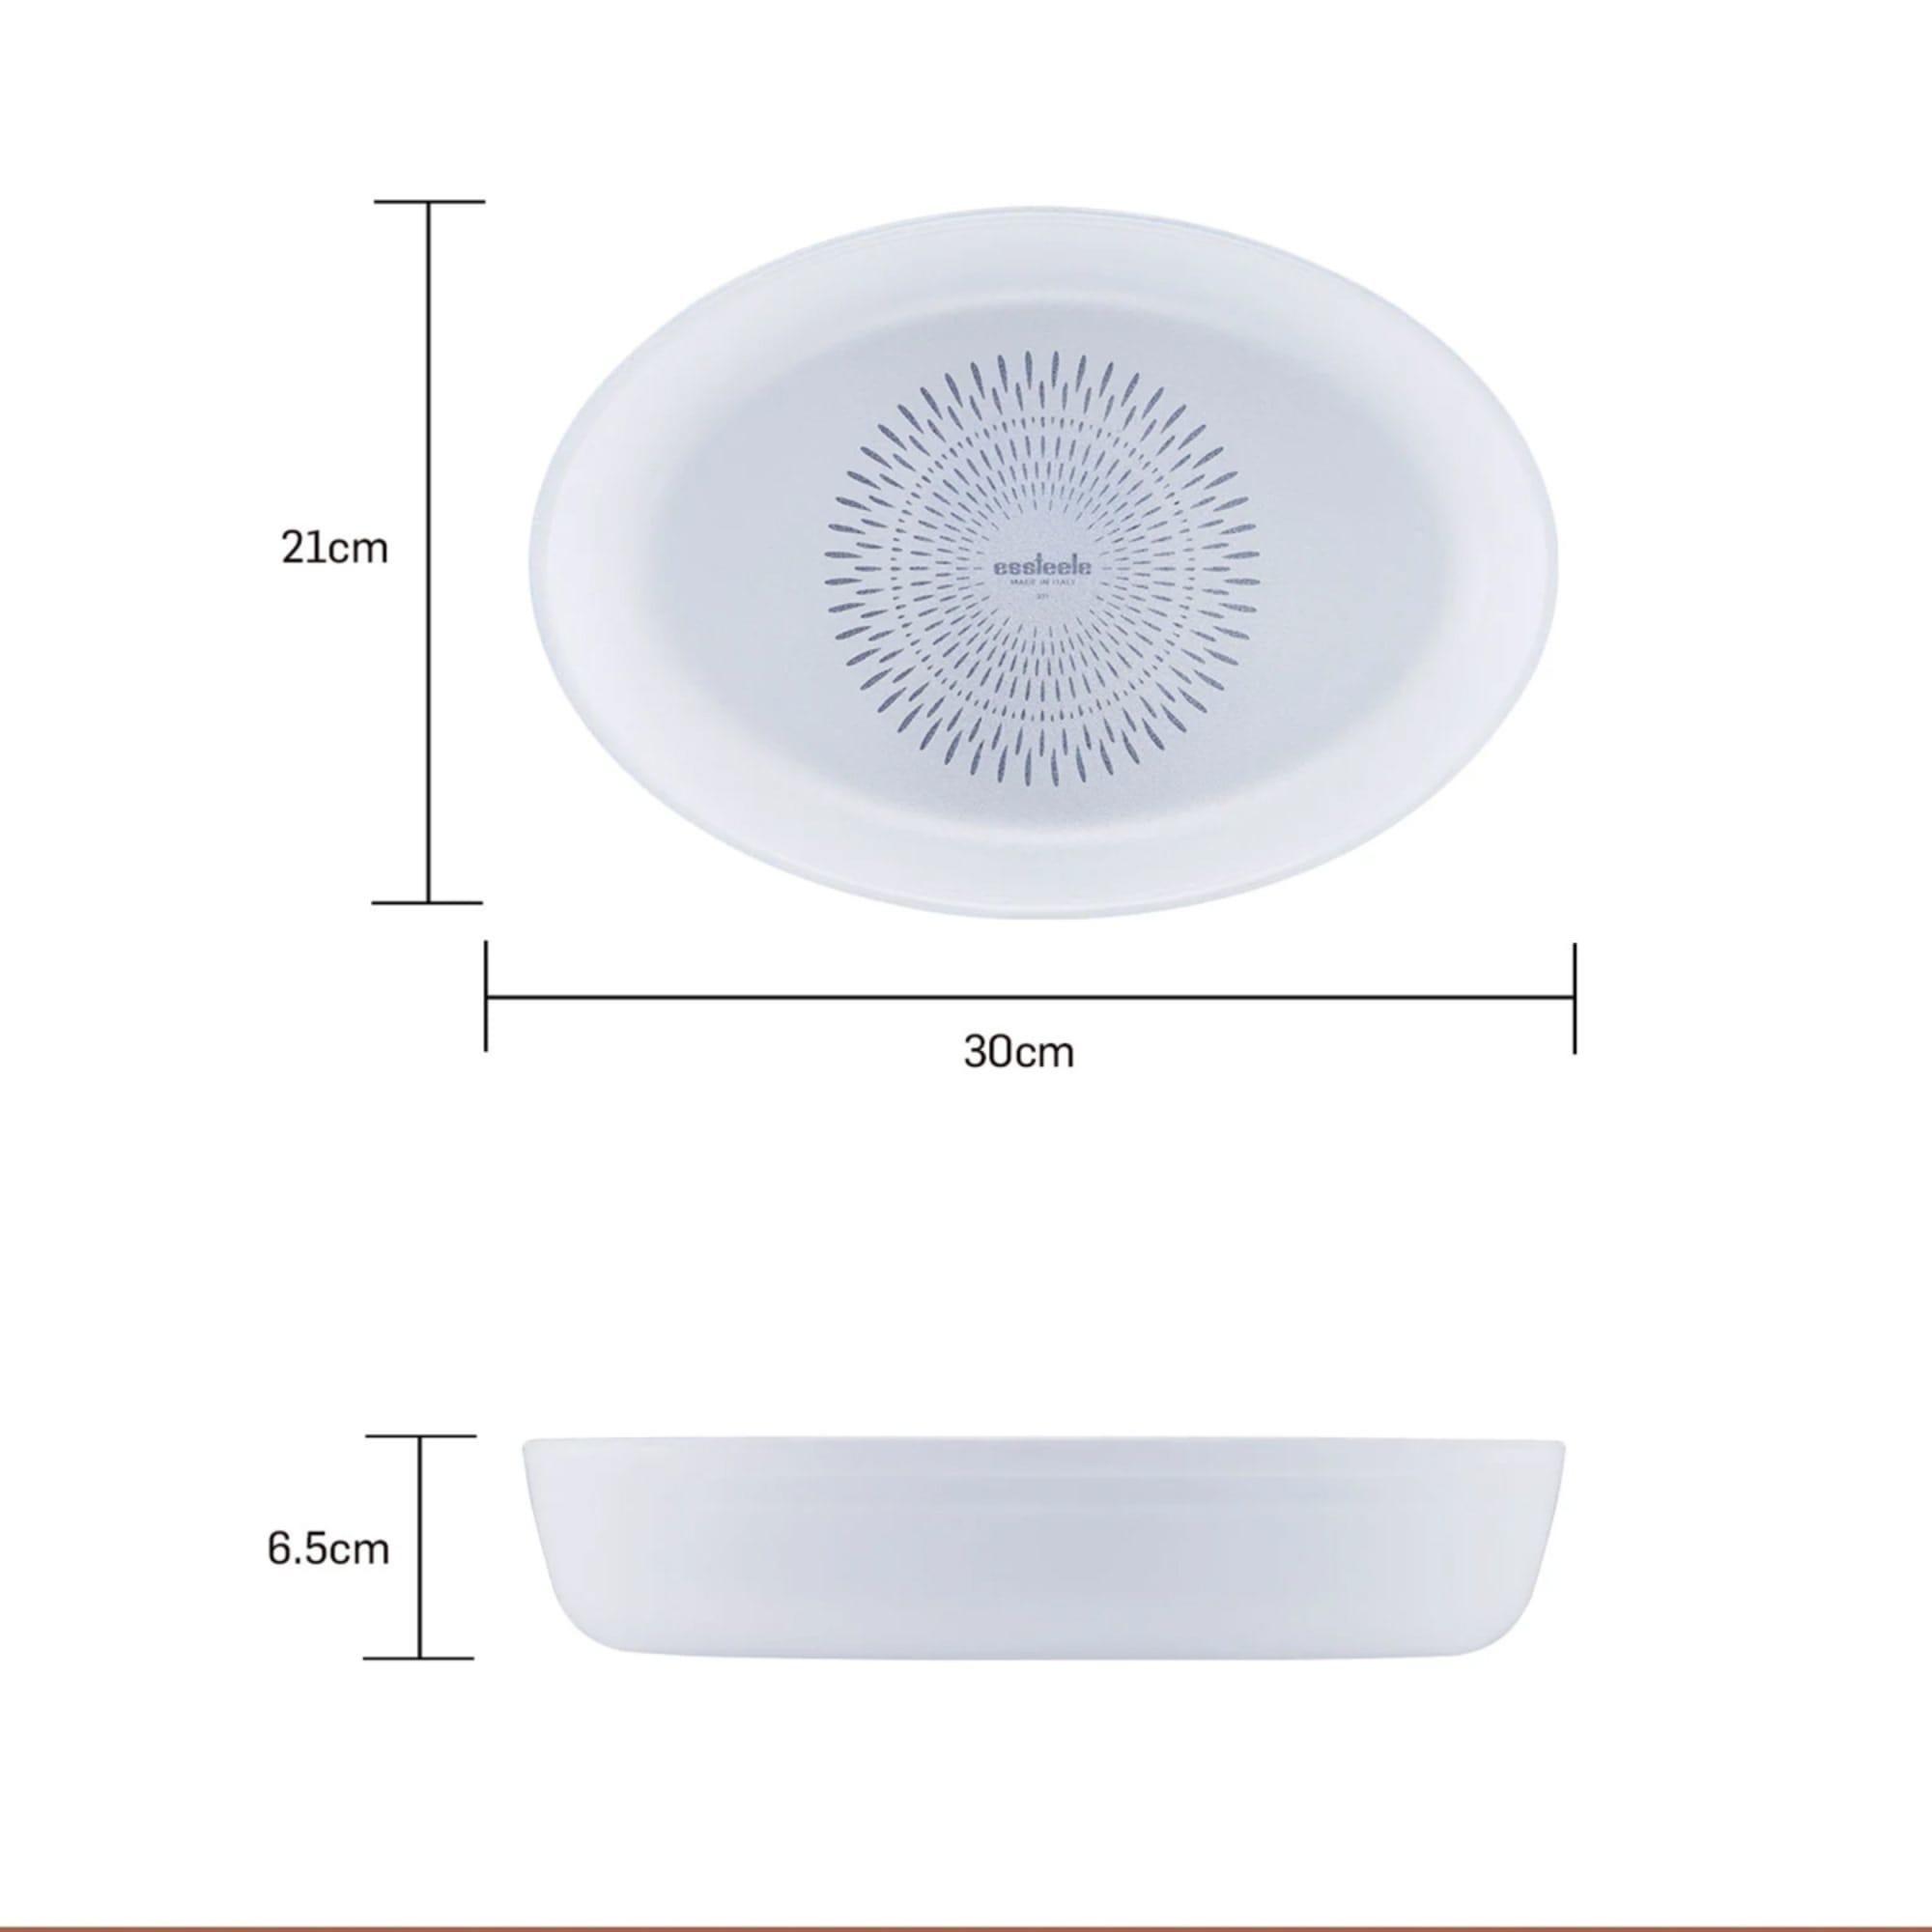 Essteele Ceramic Oval Glass Dish 30cm - 1.9L Image 7